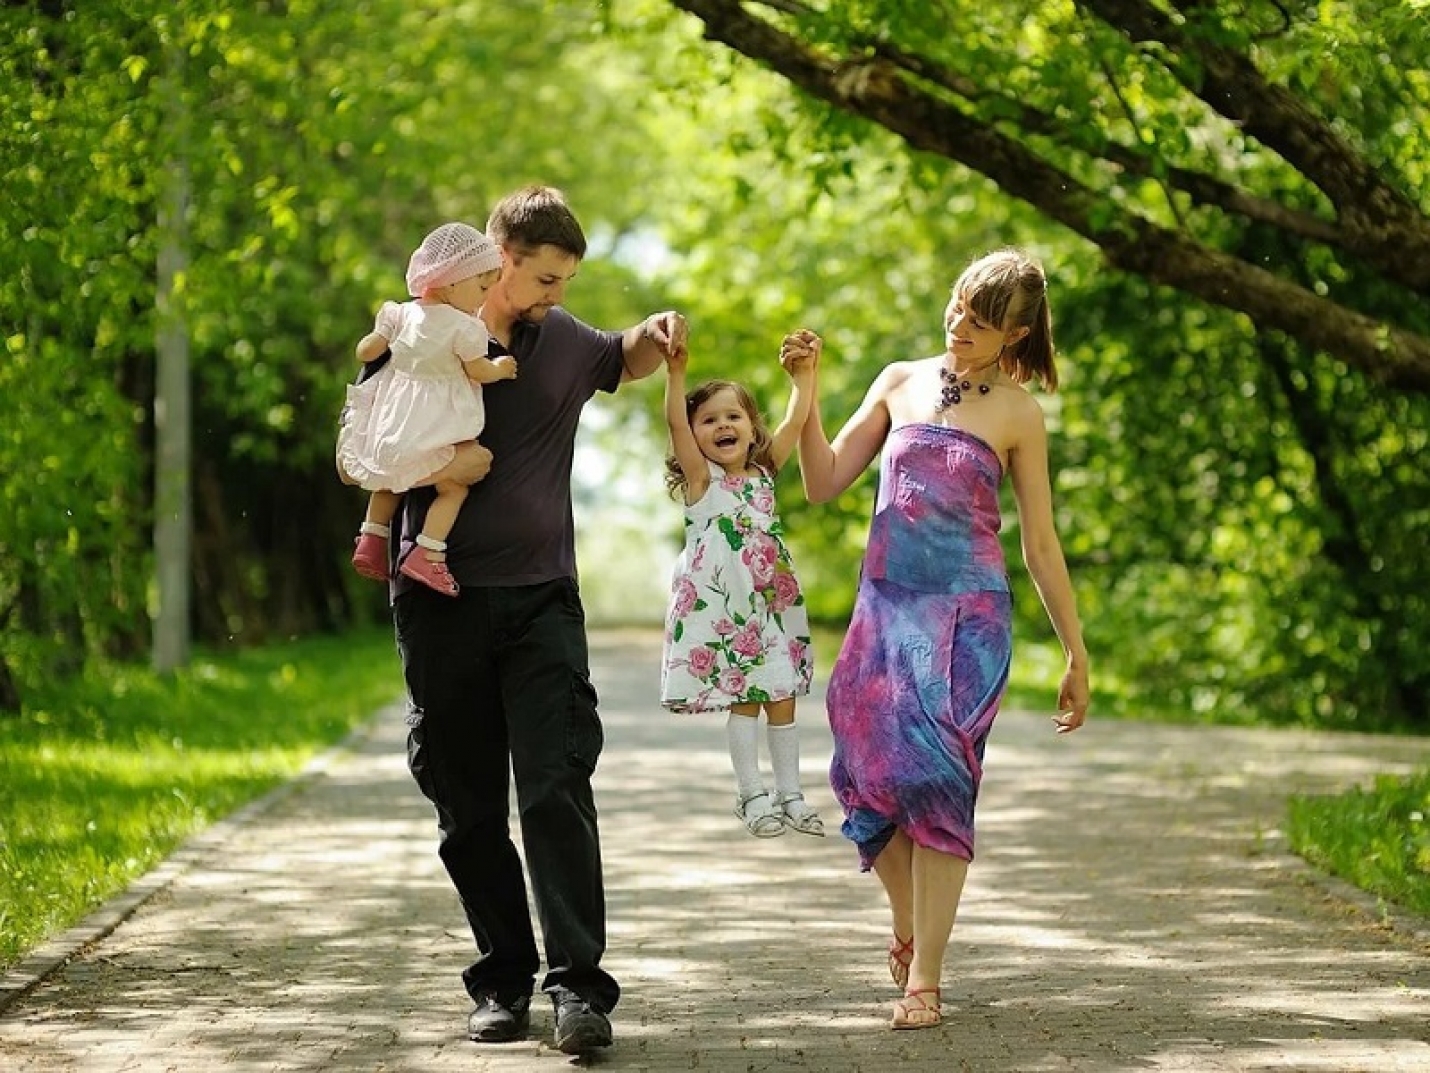 Володя вместе с семьей. Семья на прогулке. Дети на летней прогулке. Прогулка в парке с детьми. Семья с детьми на прогулке.